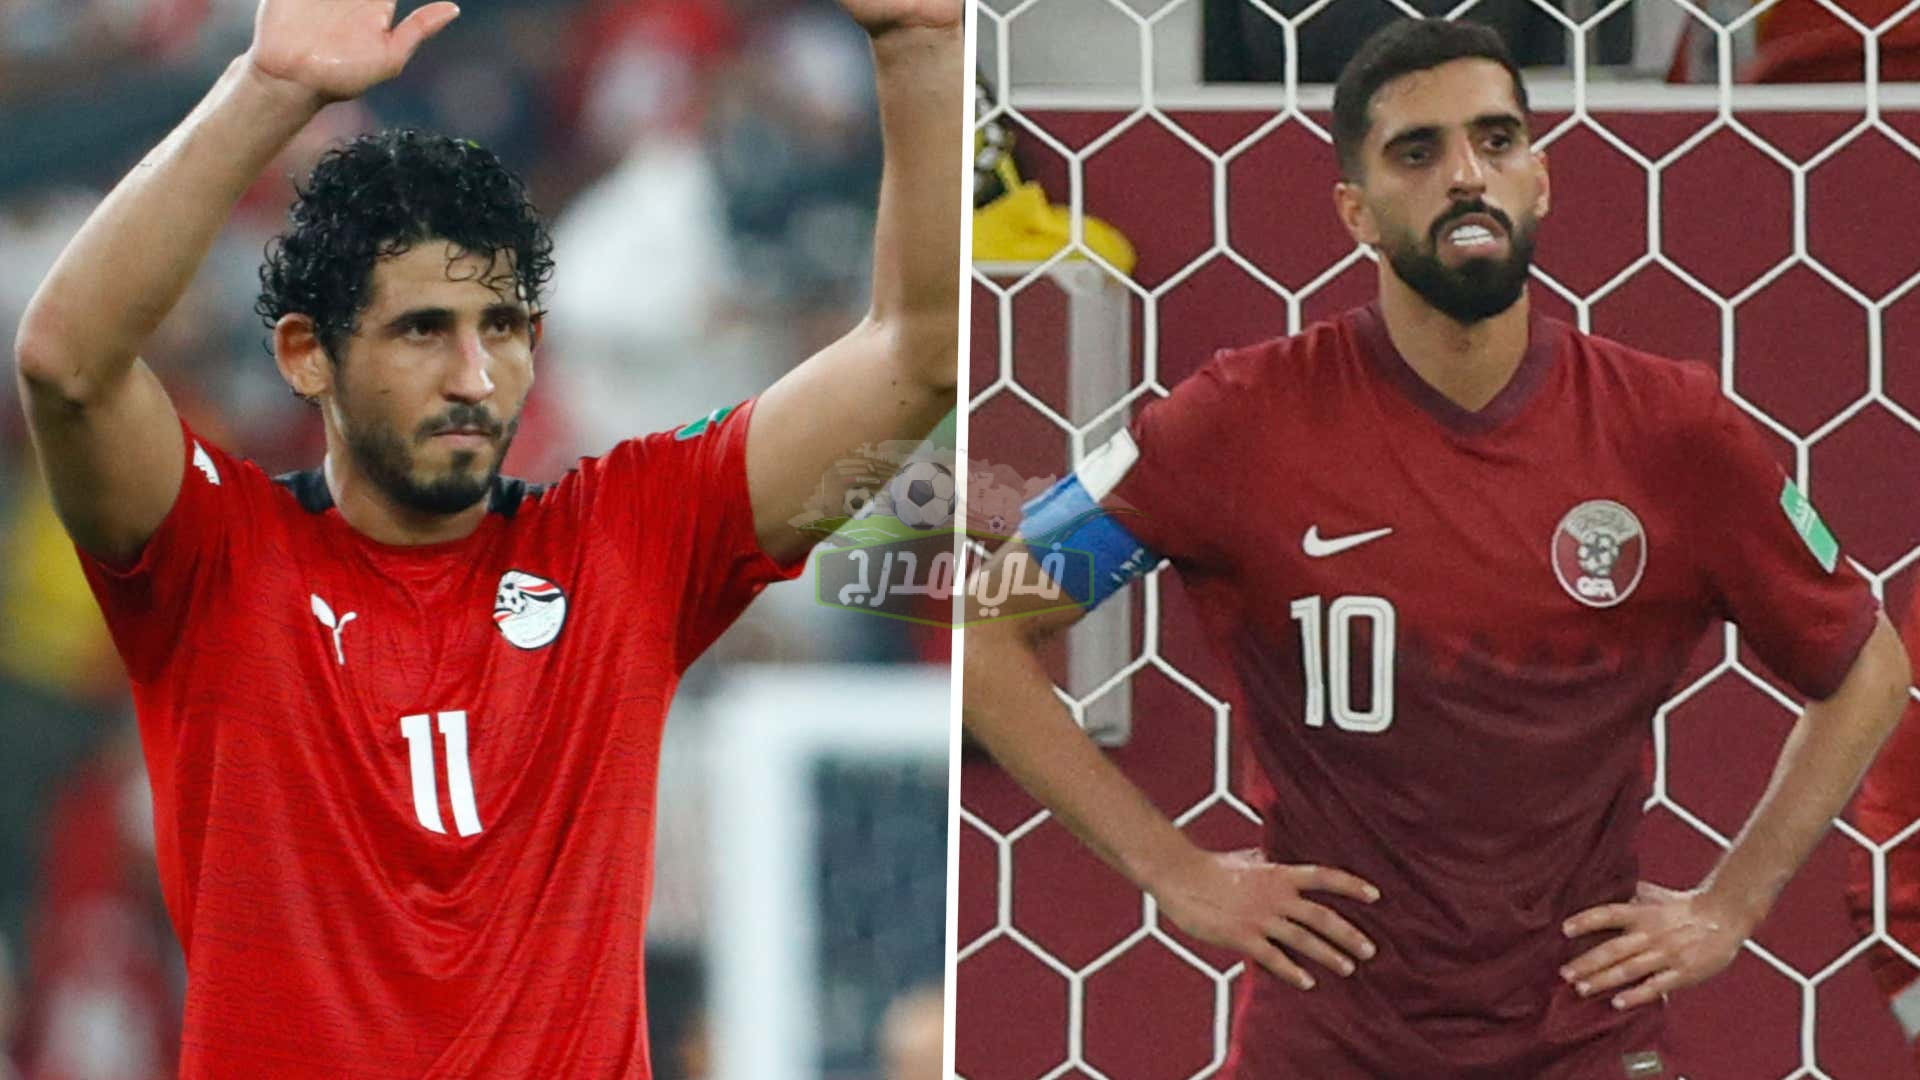 كيف تشاهد مباراة مصر وقطر لتحديد المركز الثالث في كأس العرب 2021 مجانًا؟